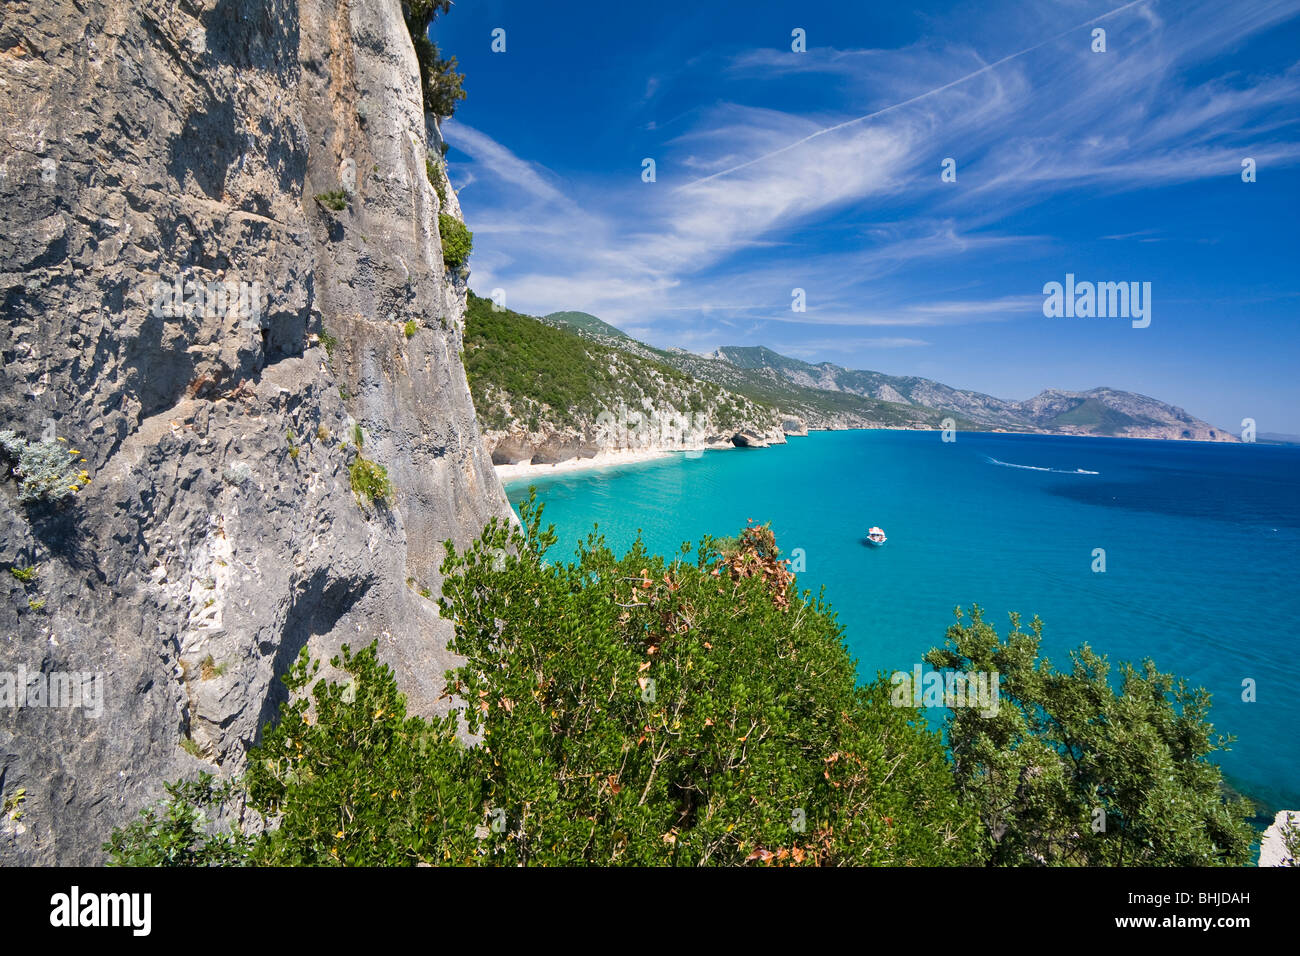 Baie vide Cala Luna Plage, Sardaigne, île de l'Italie. Eau bleu clair dans la baie de Cala Luna, Mer Méditerranée. Banque D'Images